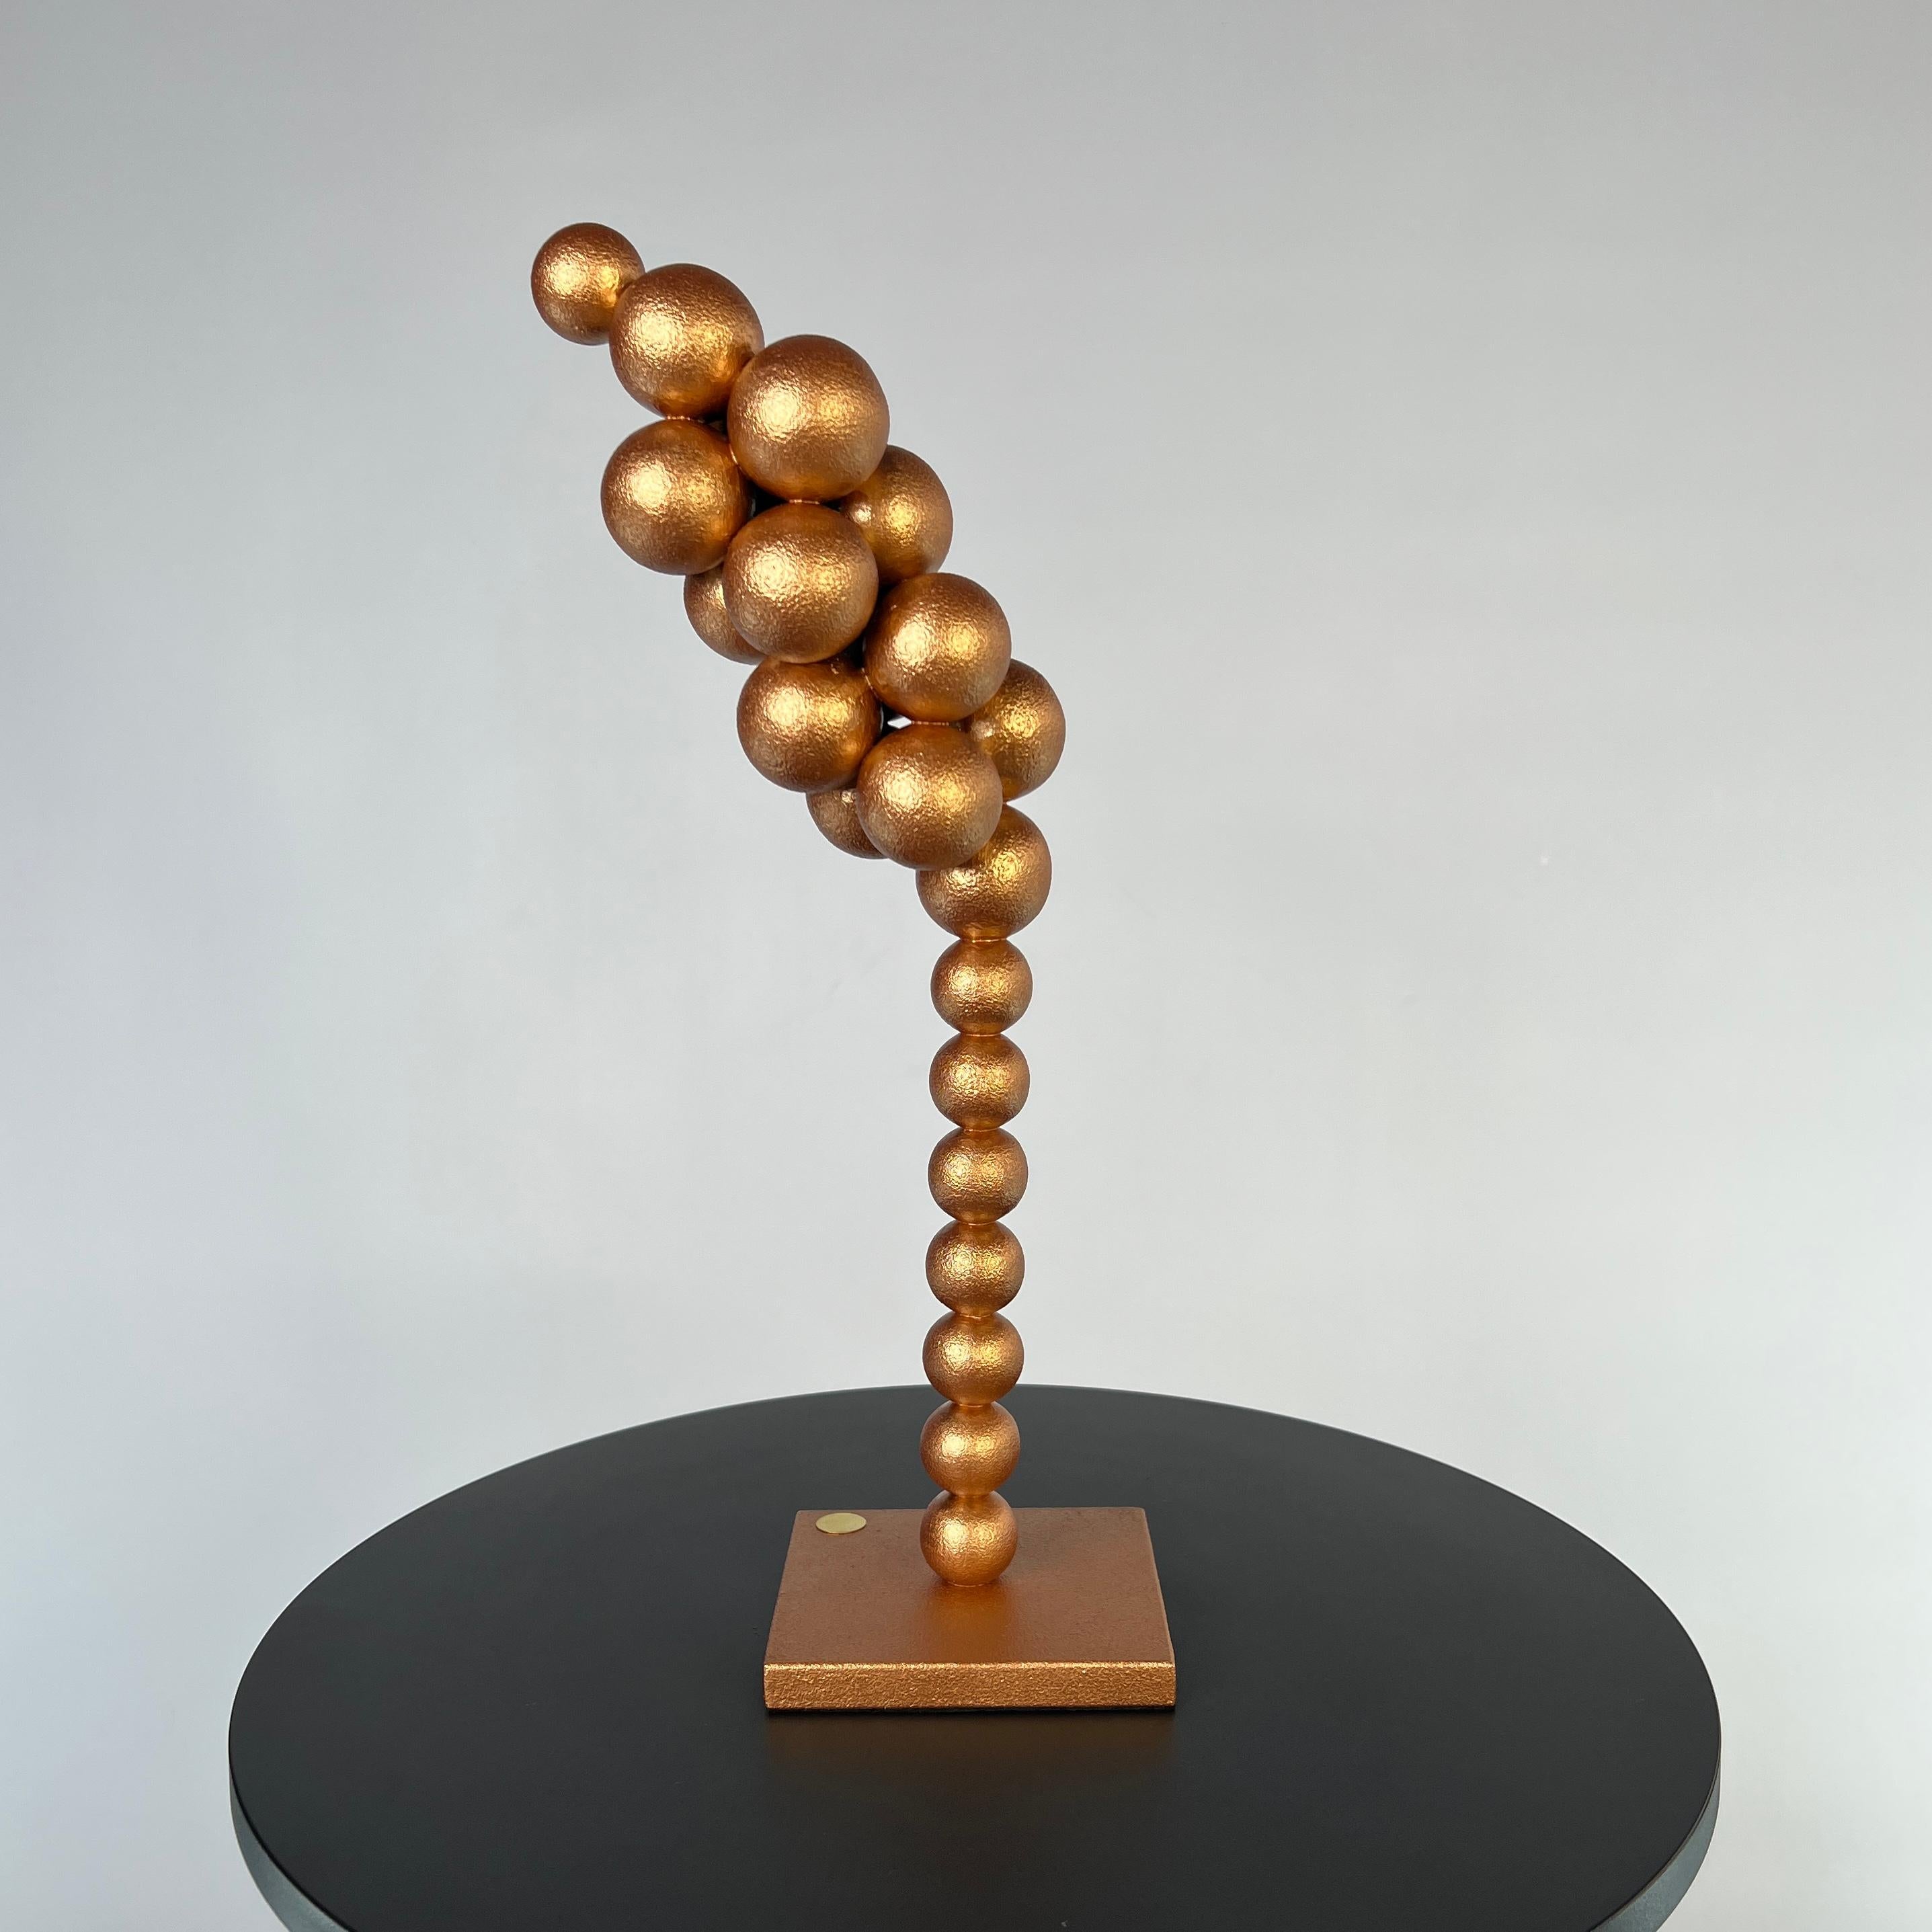 IRENA TONE Abstract Sculpture - Spikelet sculpture